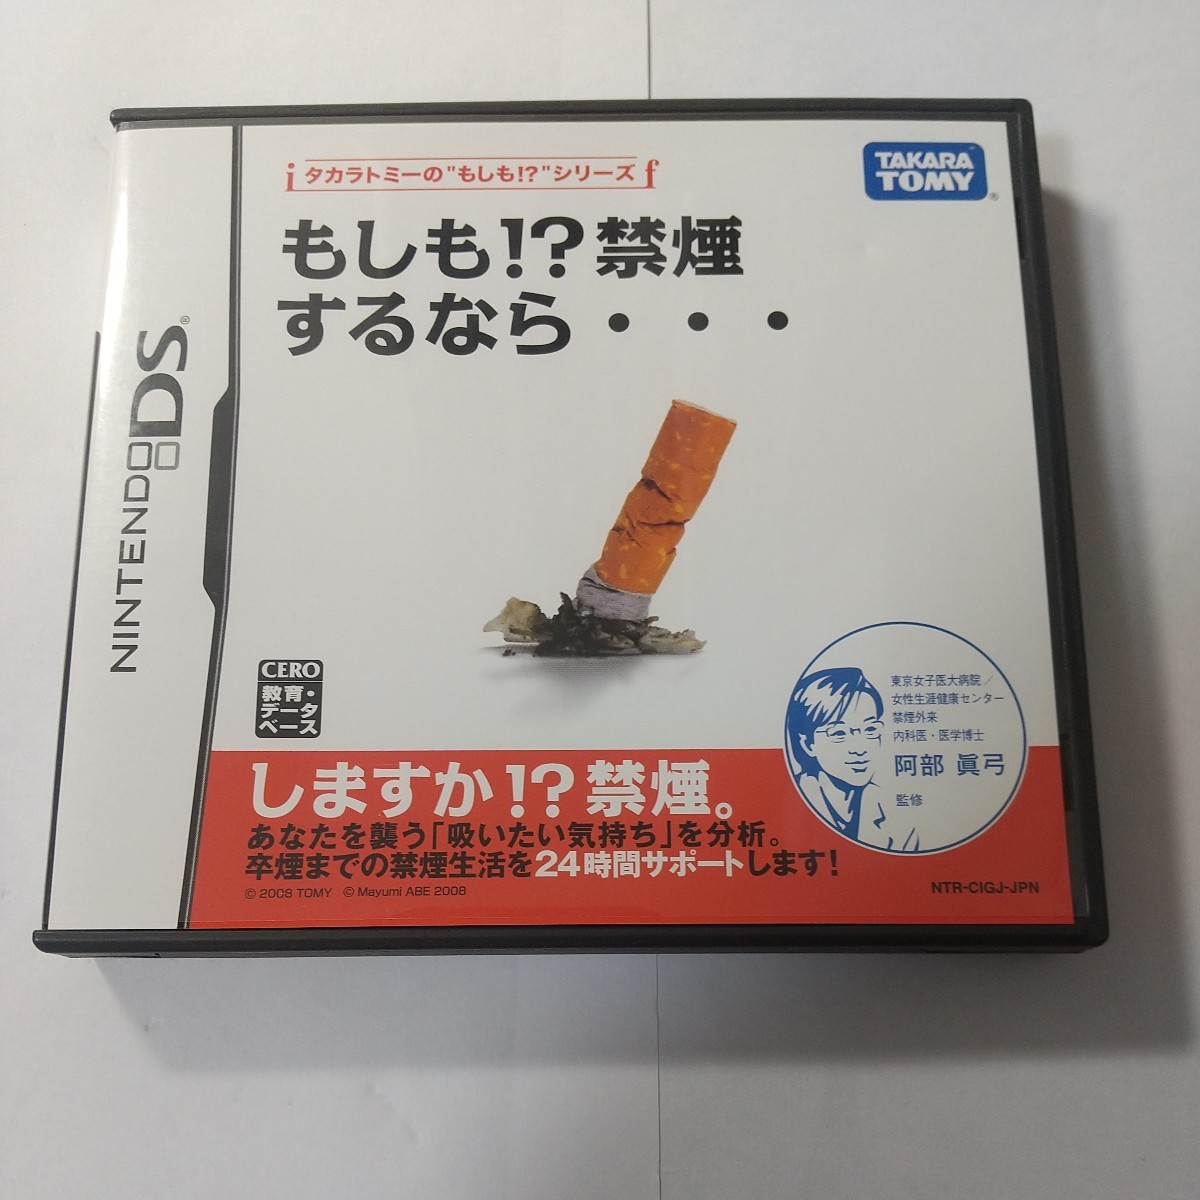 【DS】 もしも!? 禁煙するなら・・・　ニンテンドーDS　ソフト　任天堂　Nintendo　もしも禁煙するなら!？　禁煙するなら　禁煙_画像1